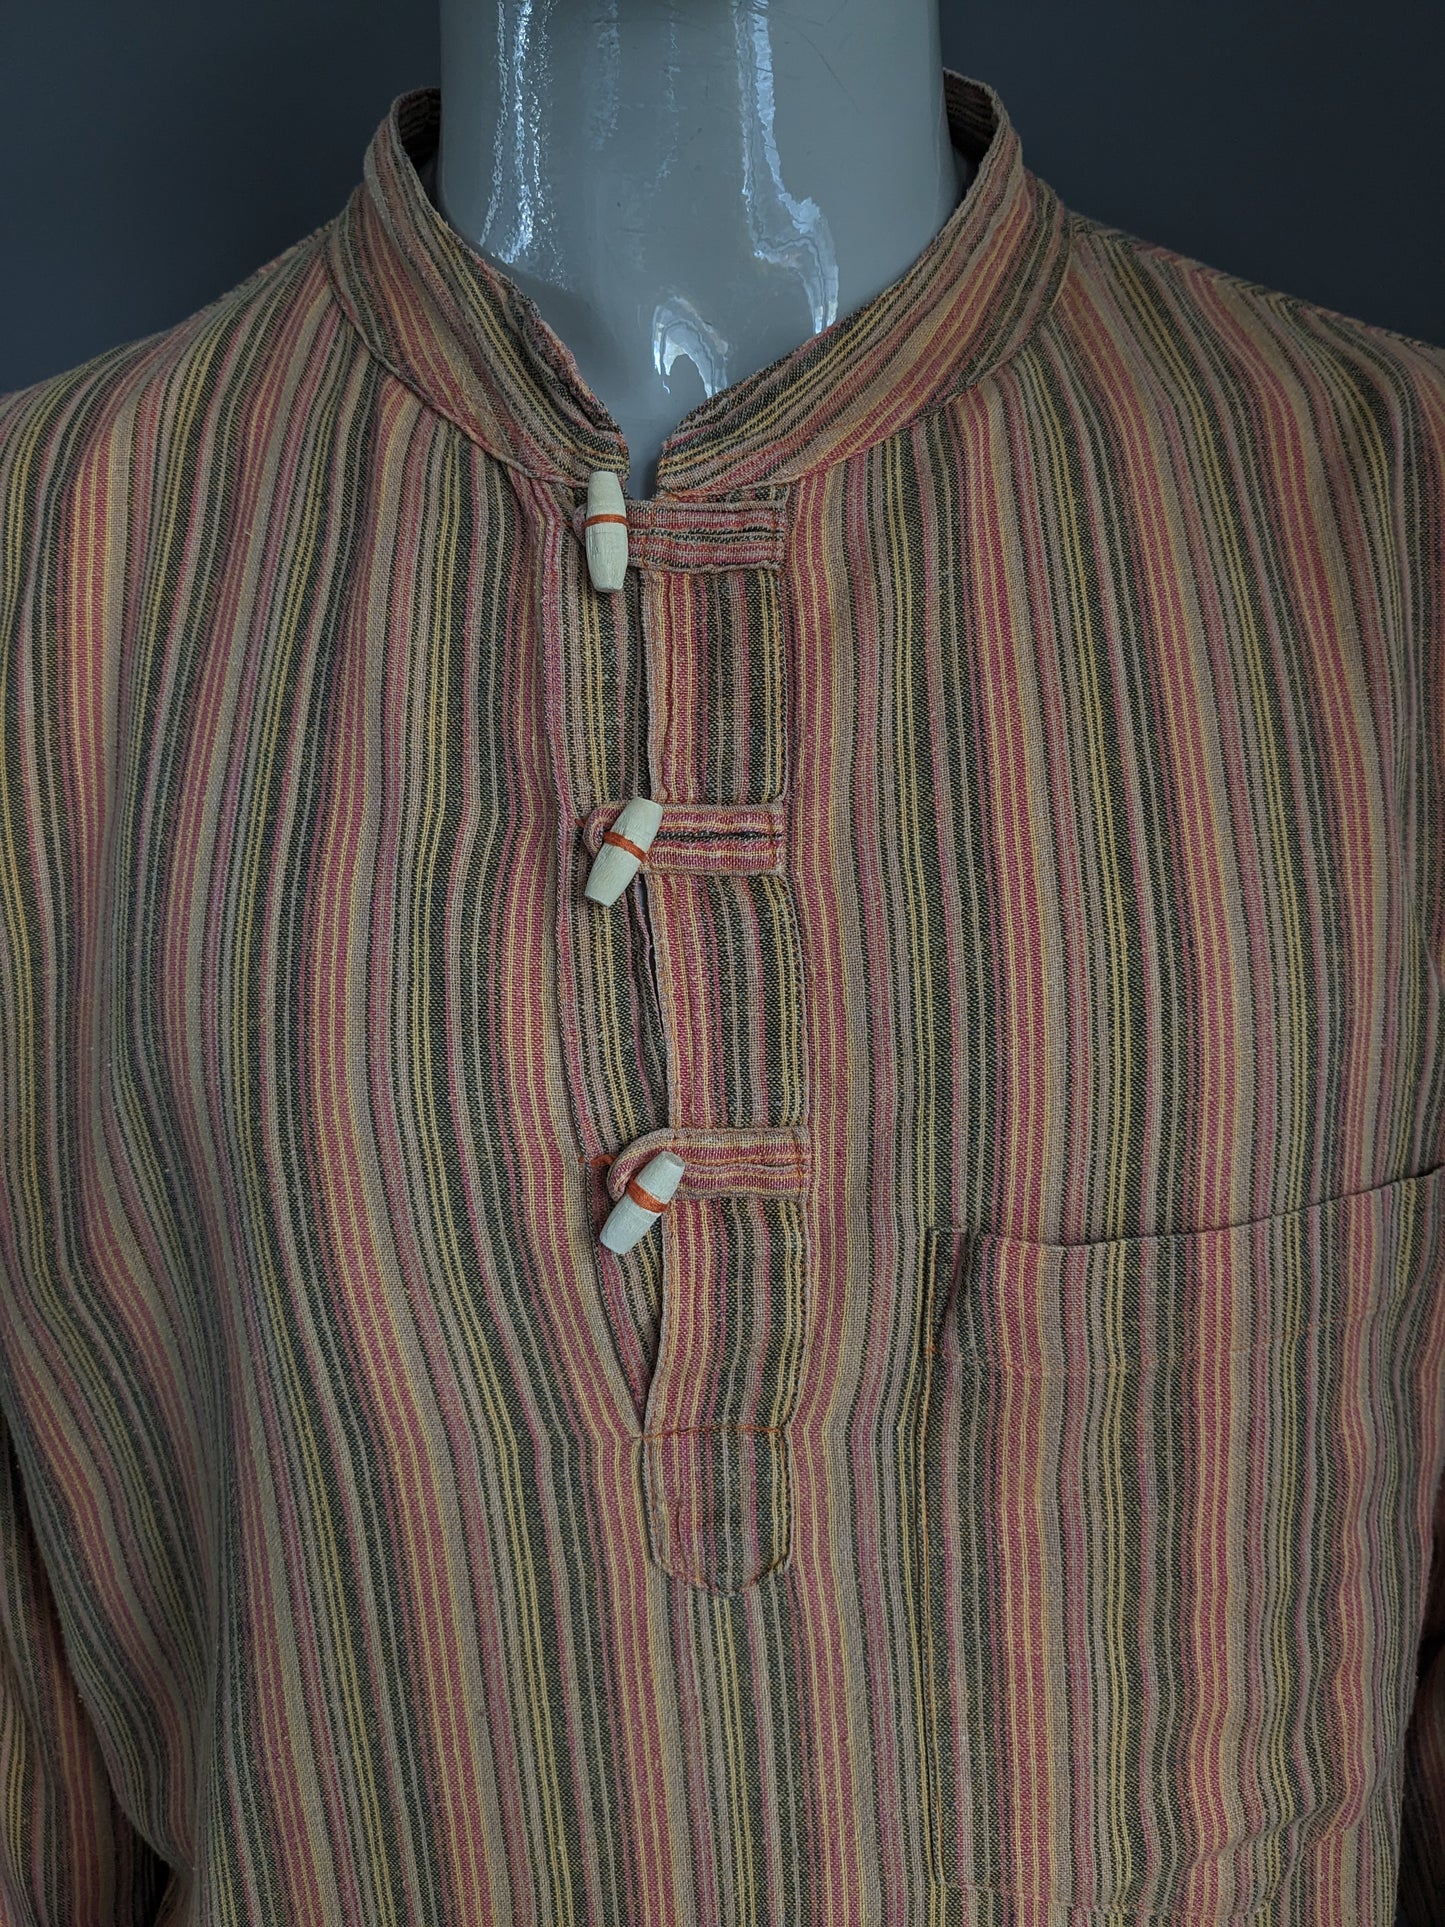 Vintage Coline -Shirt mit MAO / Bauer / Stehkragen. Orange rot gelb schwarz gestreift. Größe xl.